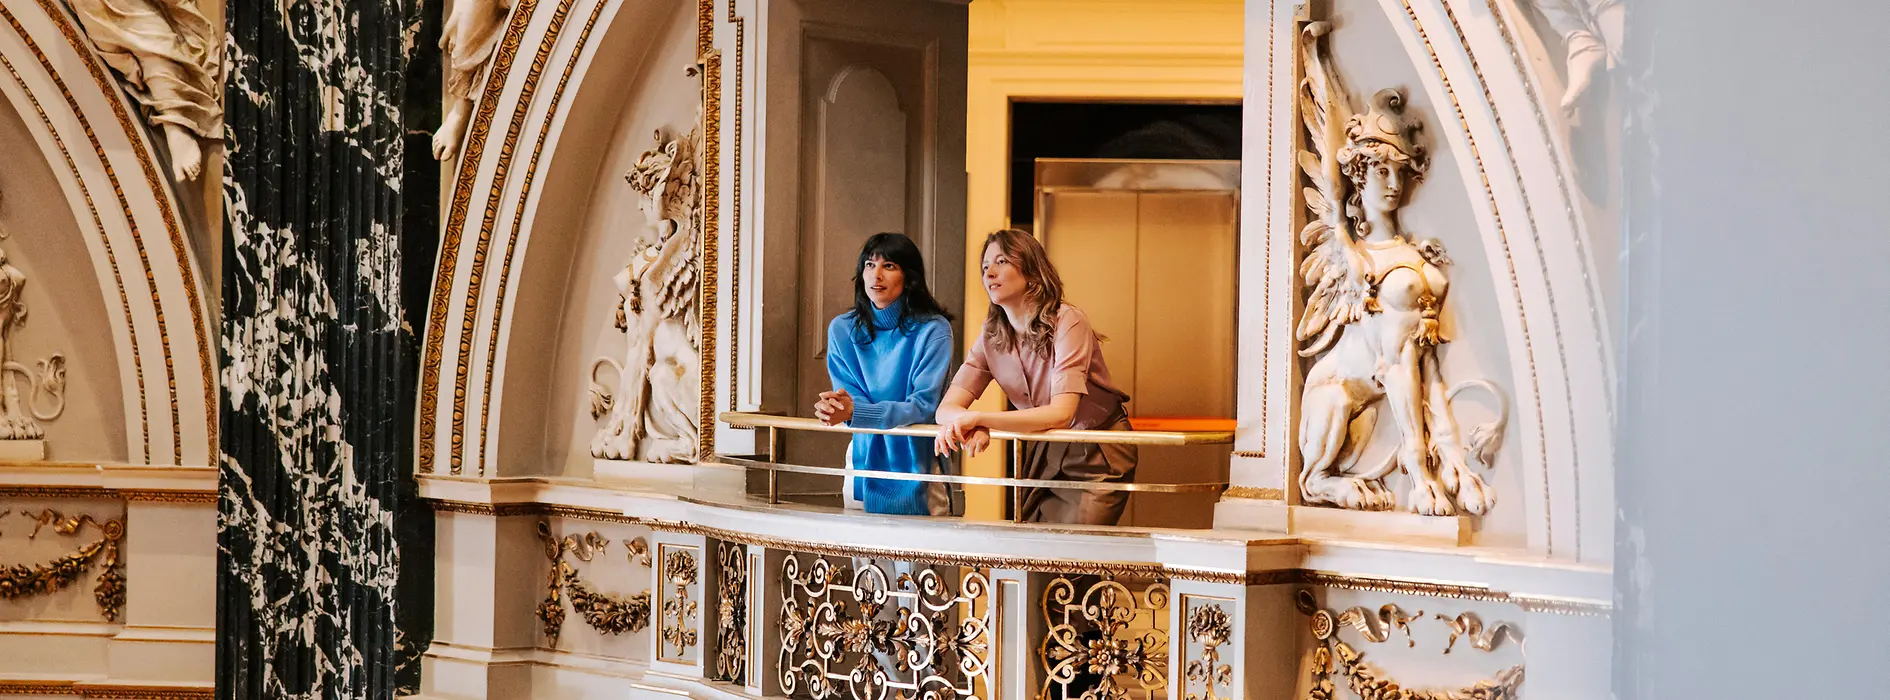 Zwei Frauen stehen auf Empore im Kunsthistorischen Museum Wien